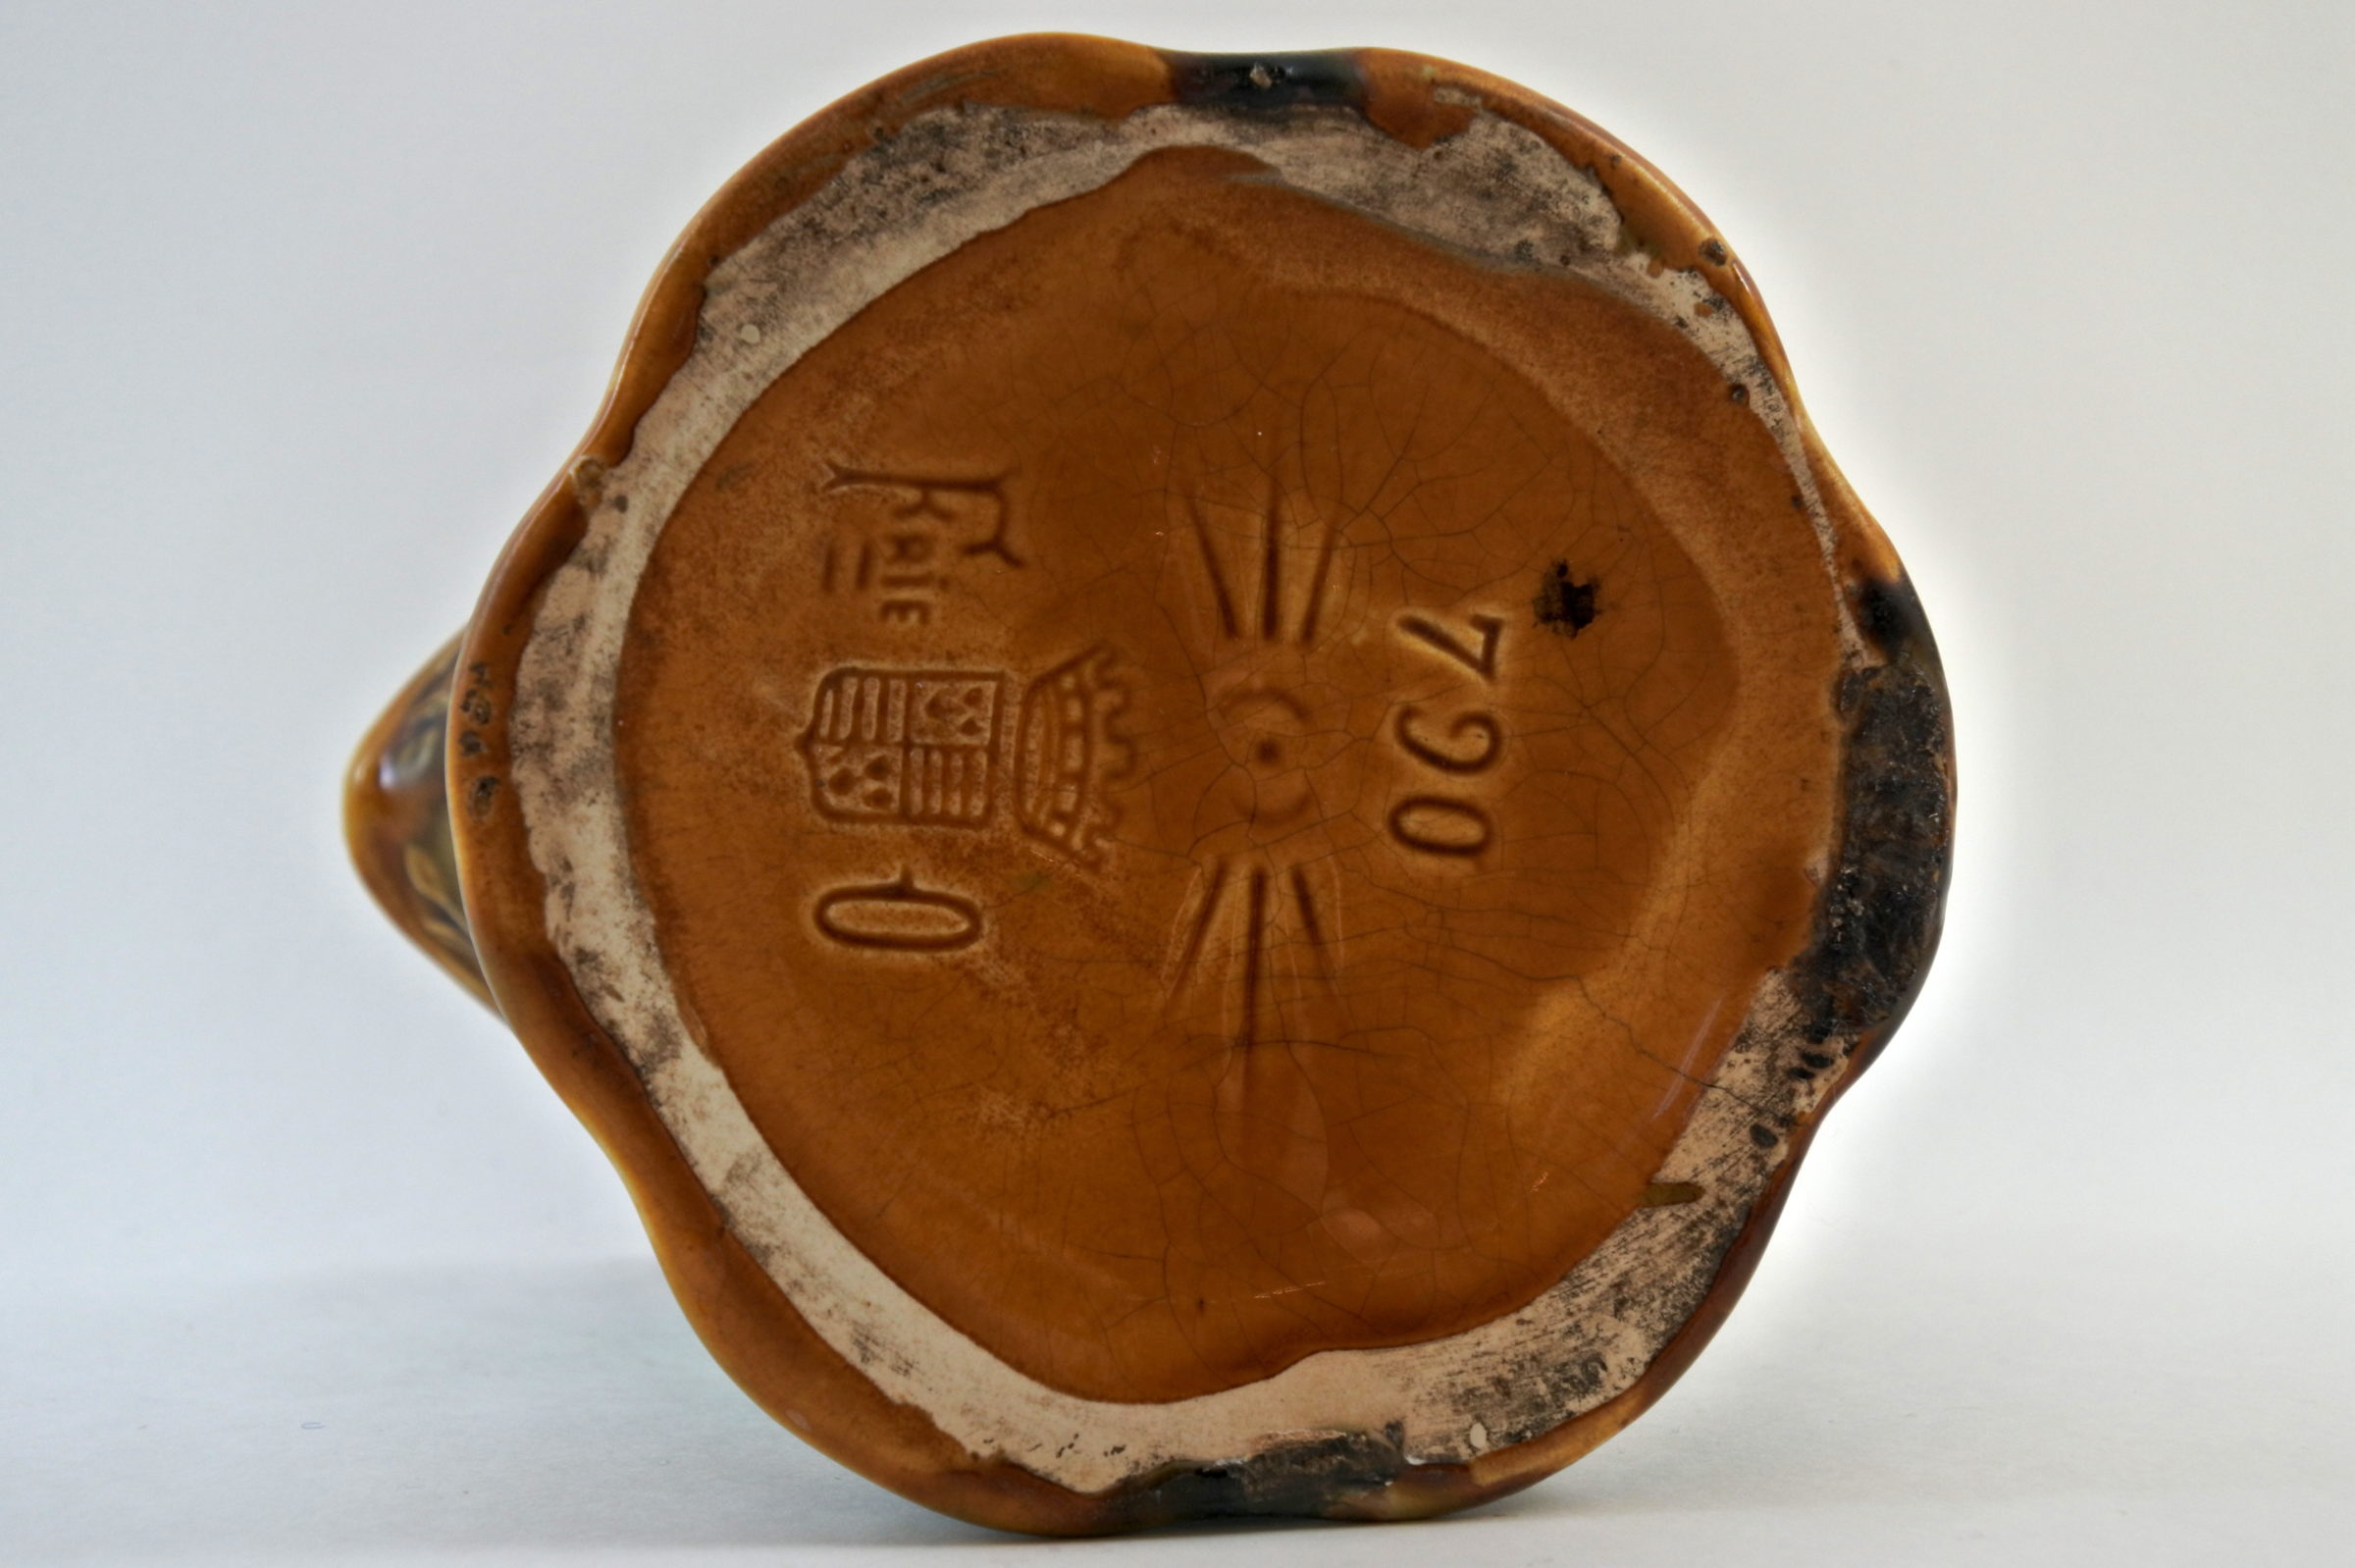 Brocca in ceramica barbotine con margherite - Marguerites - 5